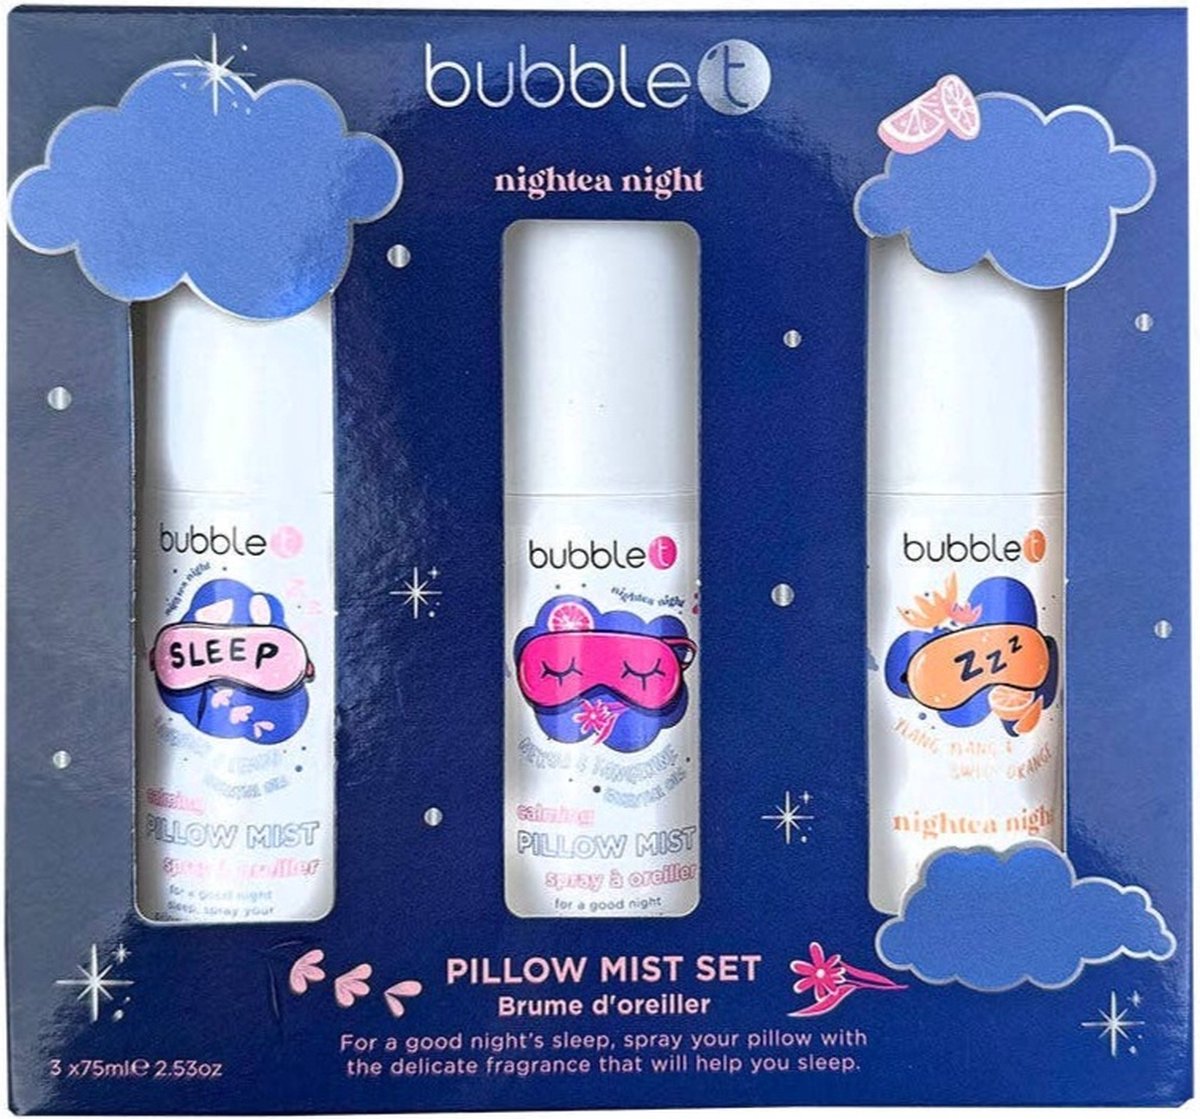 Pillow mist/ Lavendel spray cadeau set voor je kussen / bubble t cosmetics